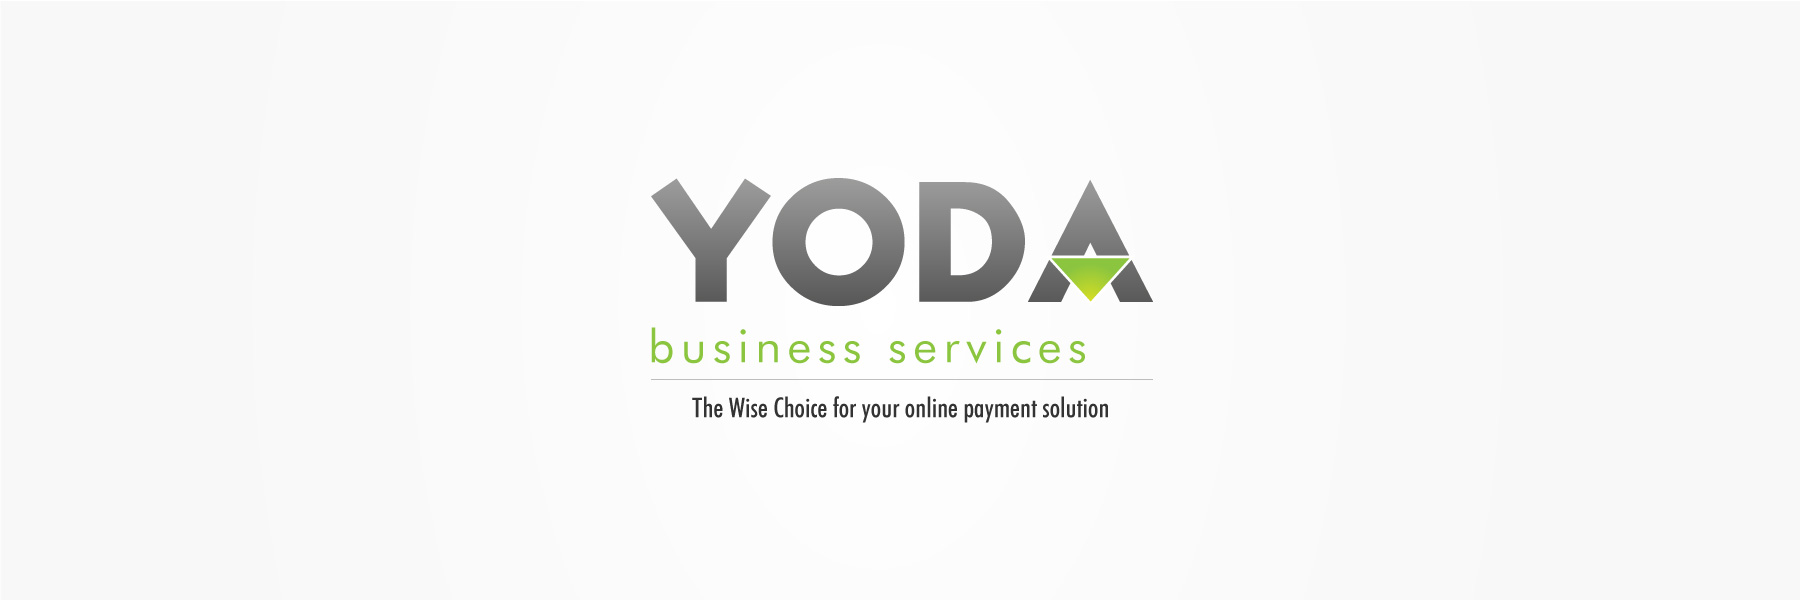 Yoda-Business-Services-Logo-Design